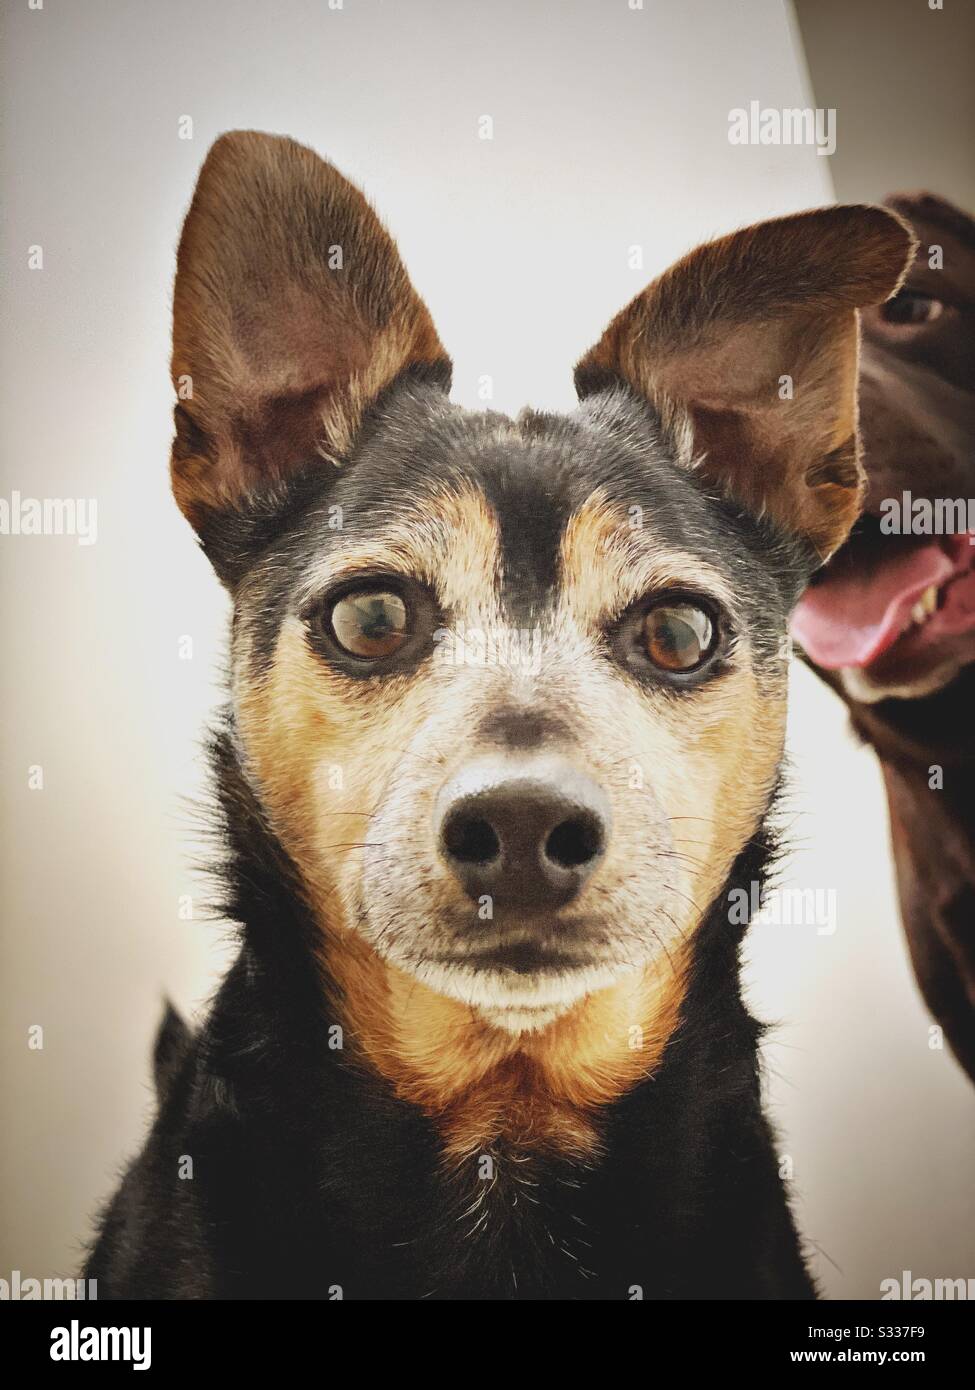 Un Labrador au chocolat est vu photosombing le portrait d'un vieux chien Jack Russell. Les animaux de compagnie mignons et heureux dans la maison Banque D'Images